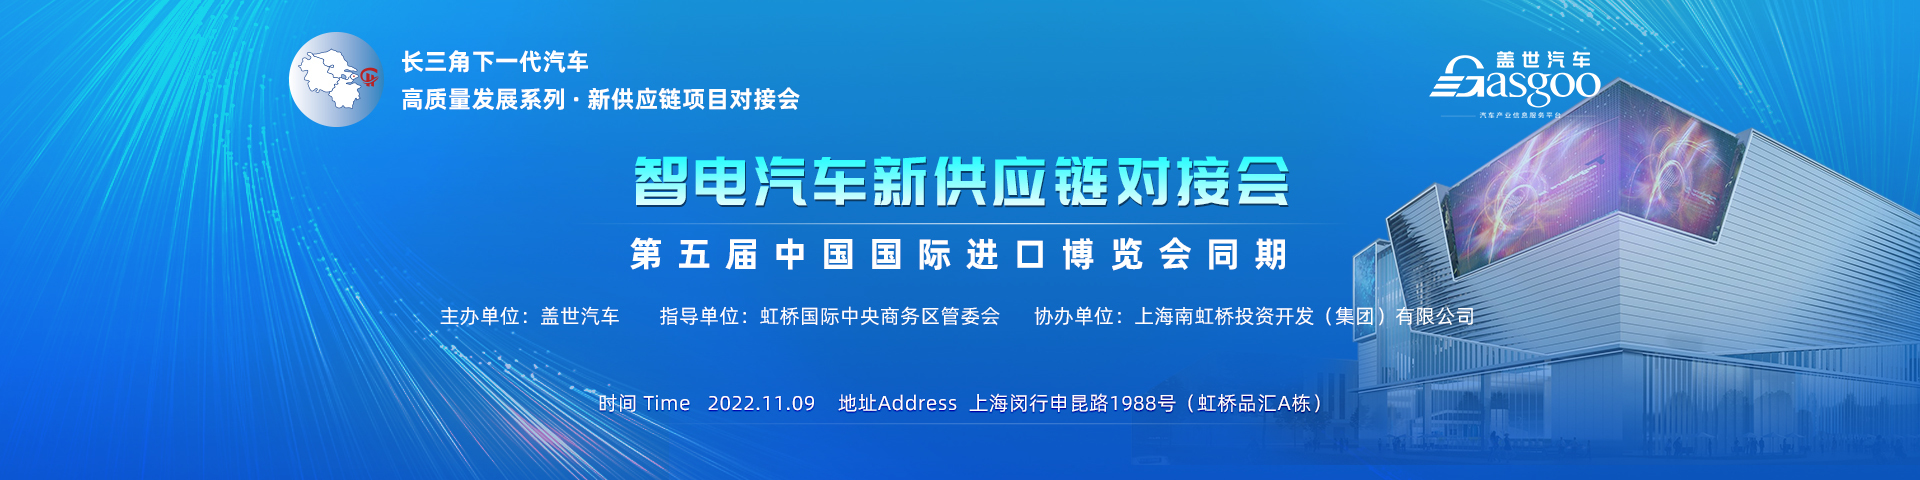 智电汽车新供应链对接会  第五届中国国际进口博览会同期